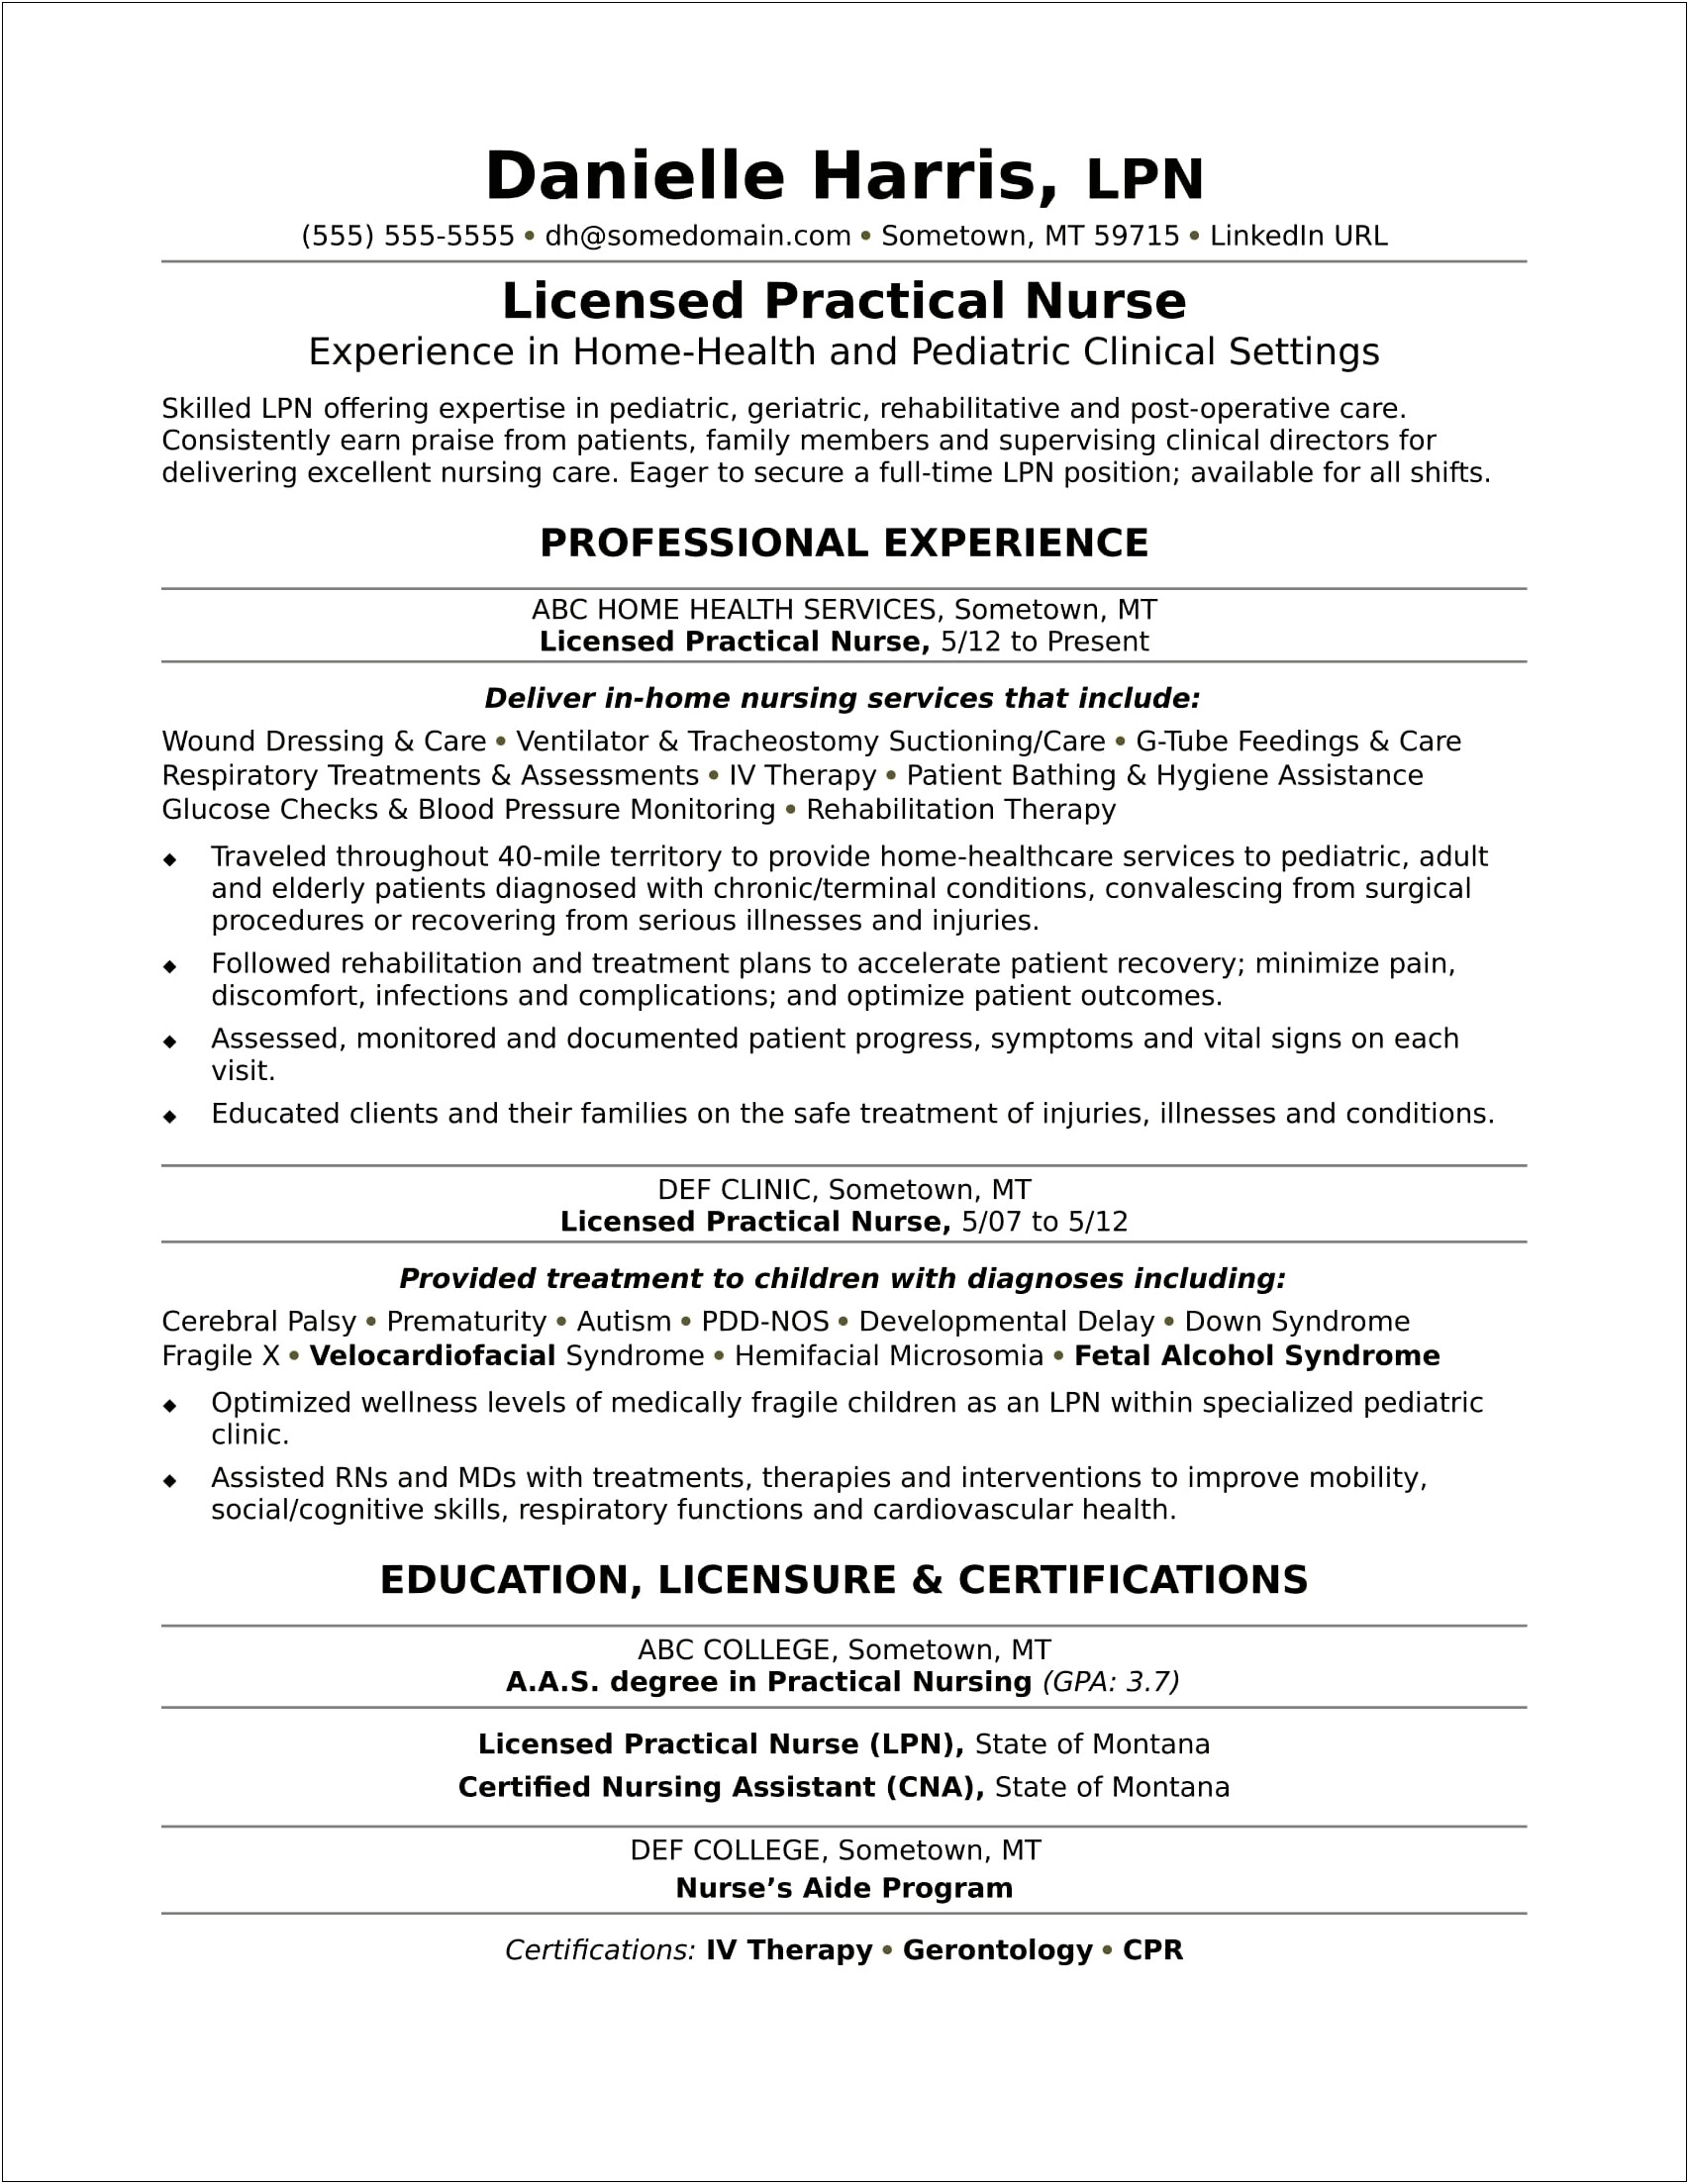 Nursing Home Nurse Job Description Resume